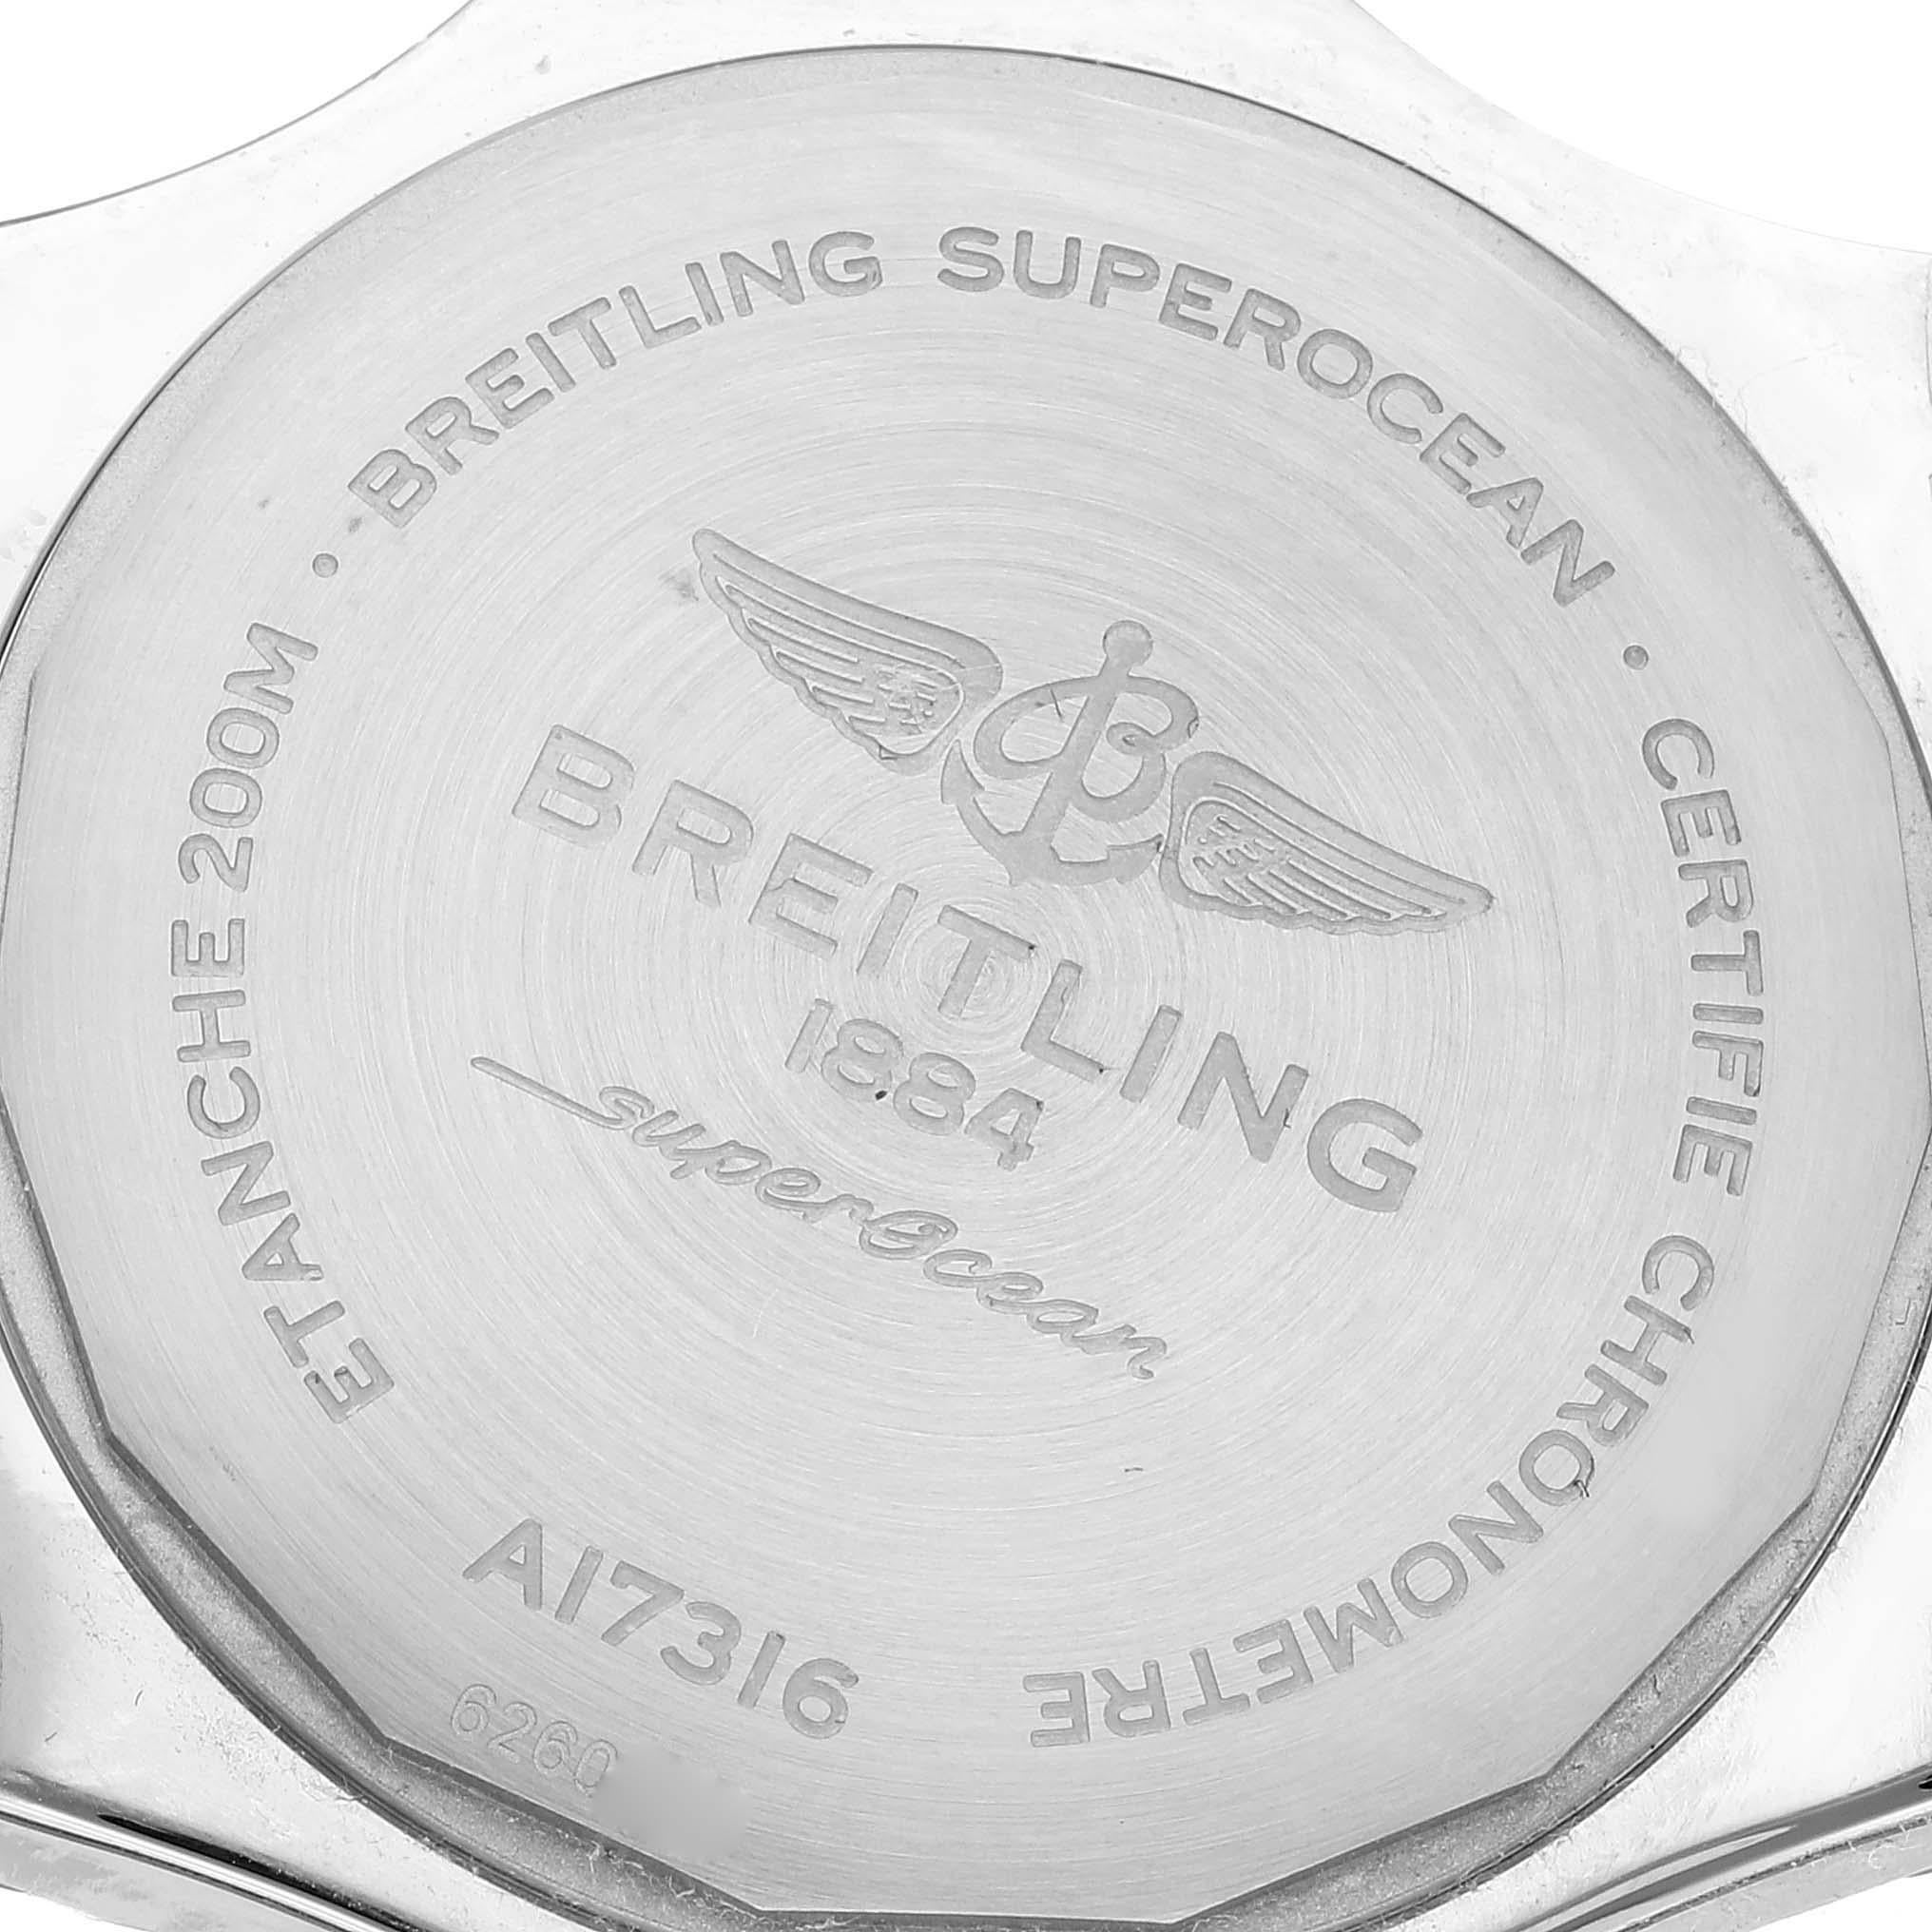 Breitling Superocean 36mm Orange Dial Steel Ladies Watch A17316 Unworn 5